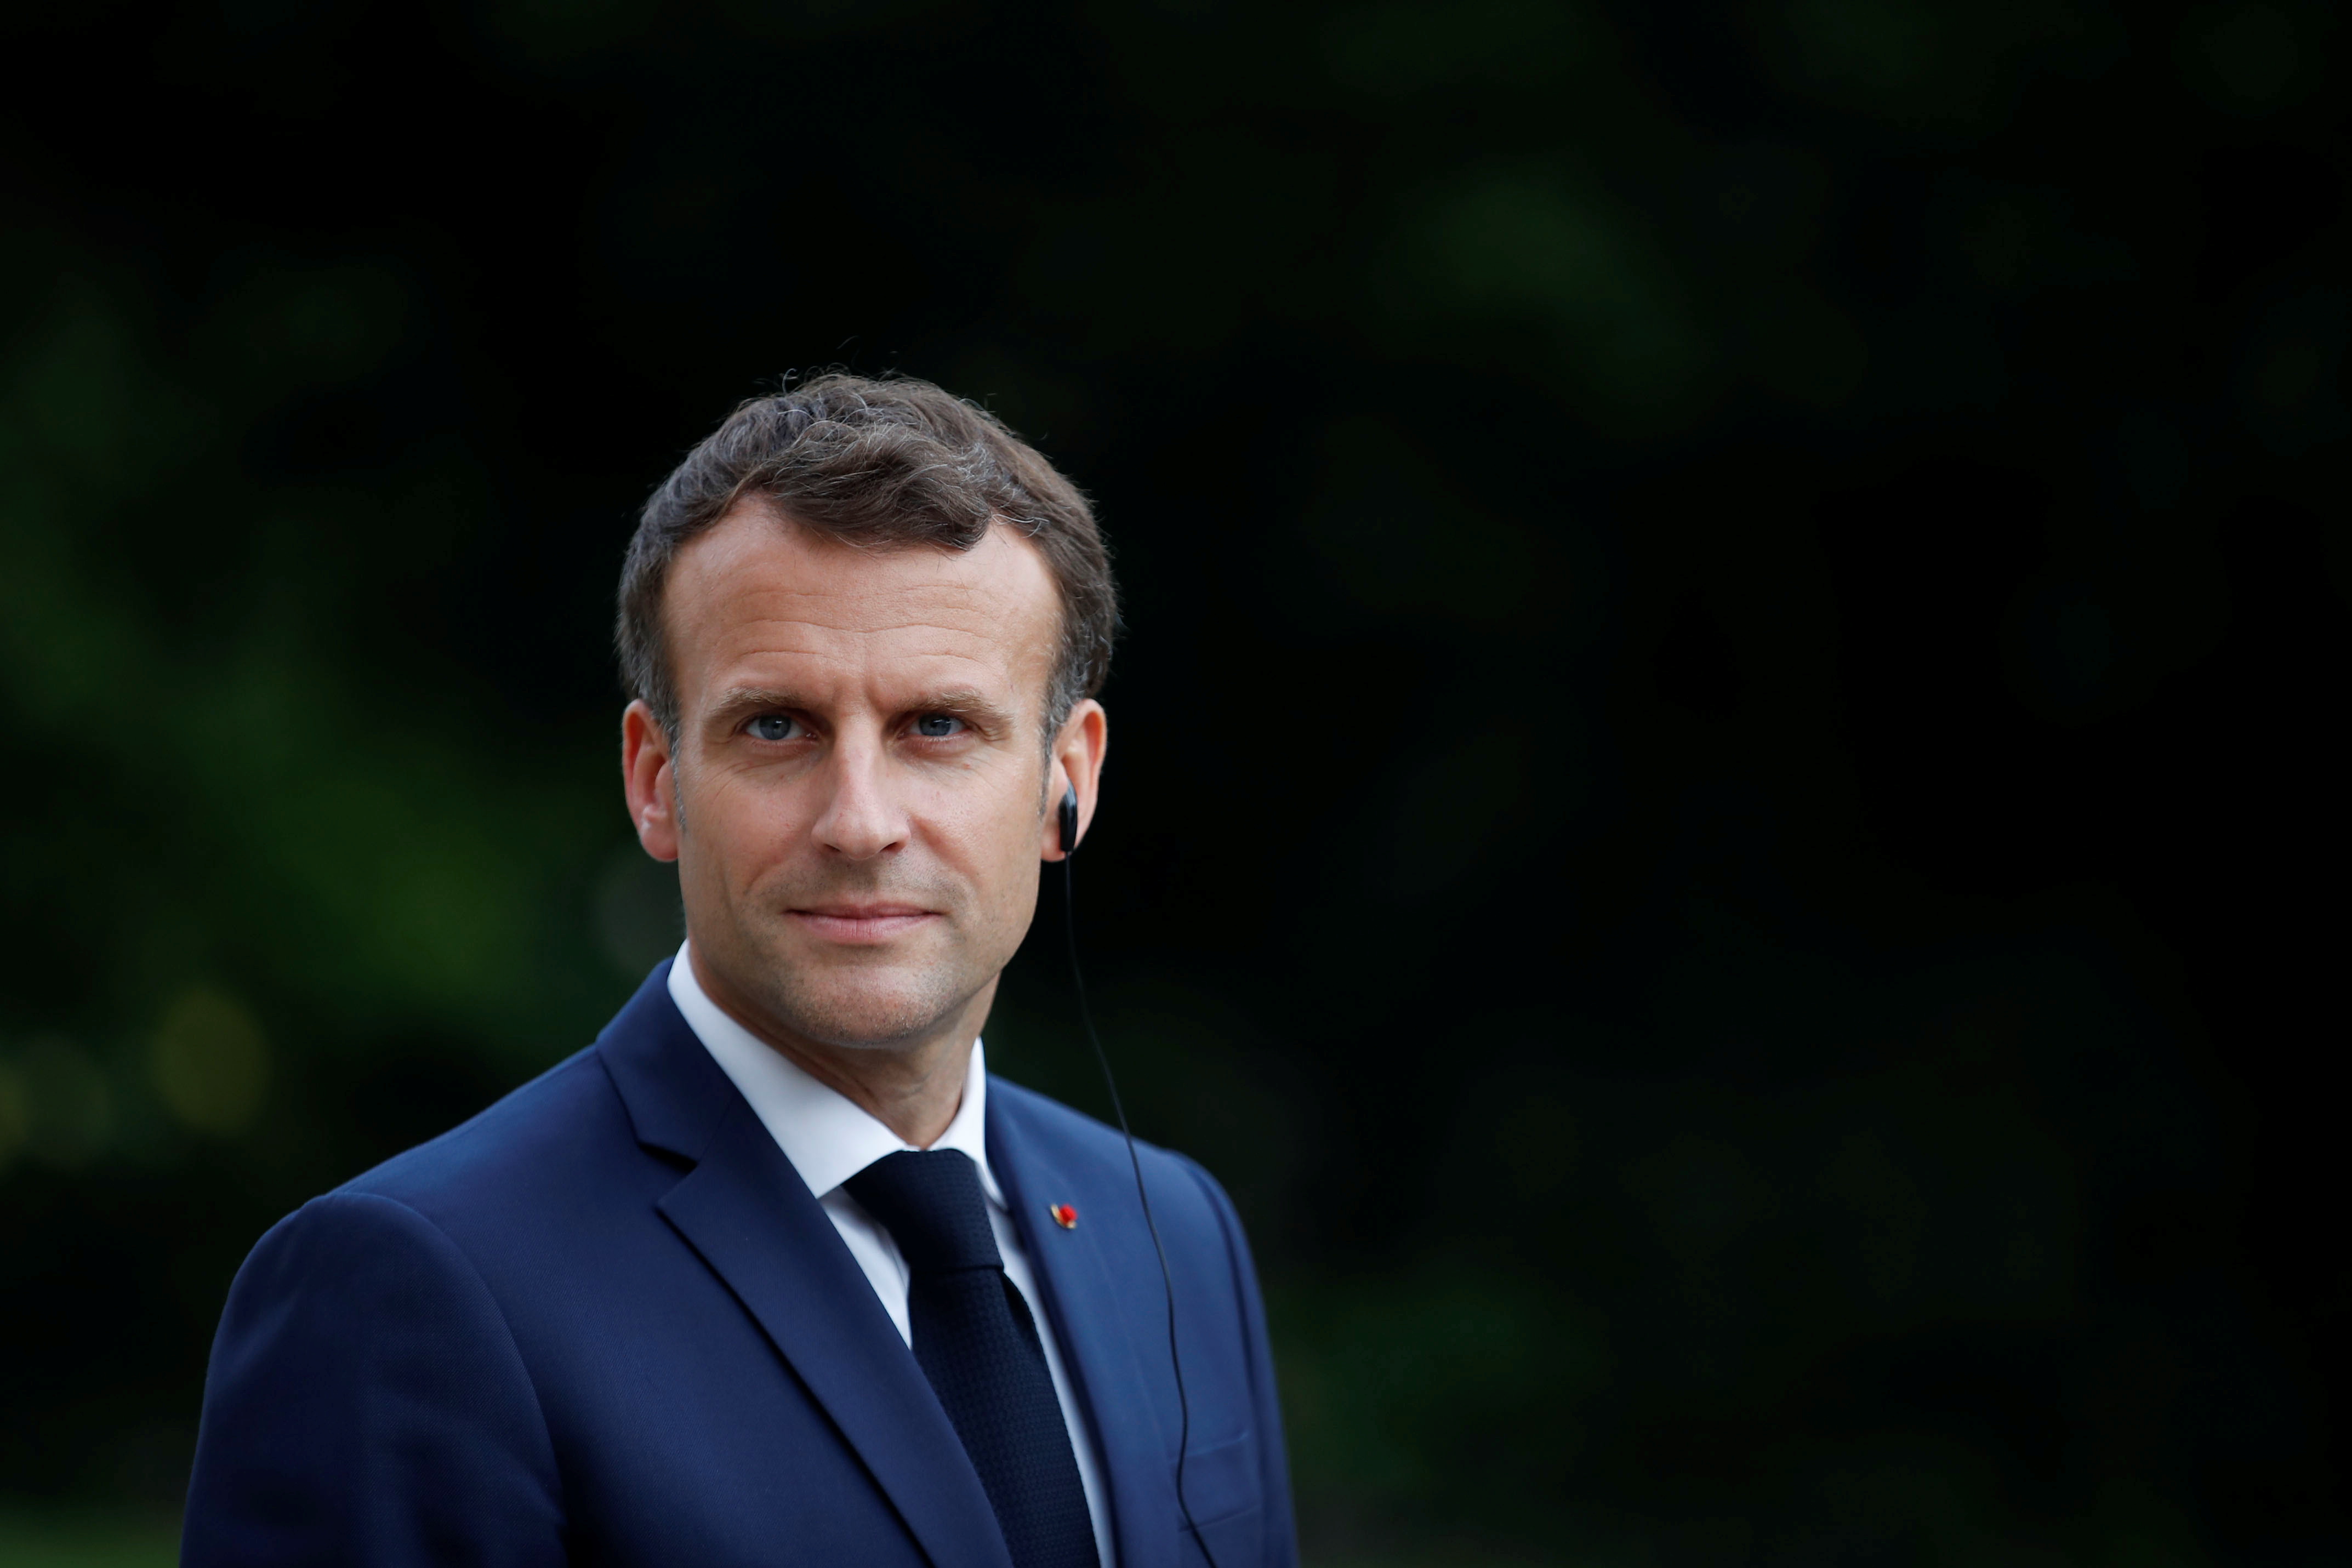 En su rol de Presidente, Macron es el "protector" de la Academia Francesa. REUTERS/Gonzalo Fuentes